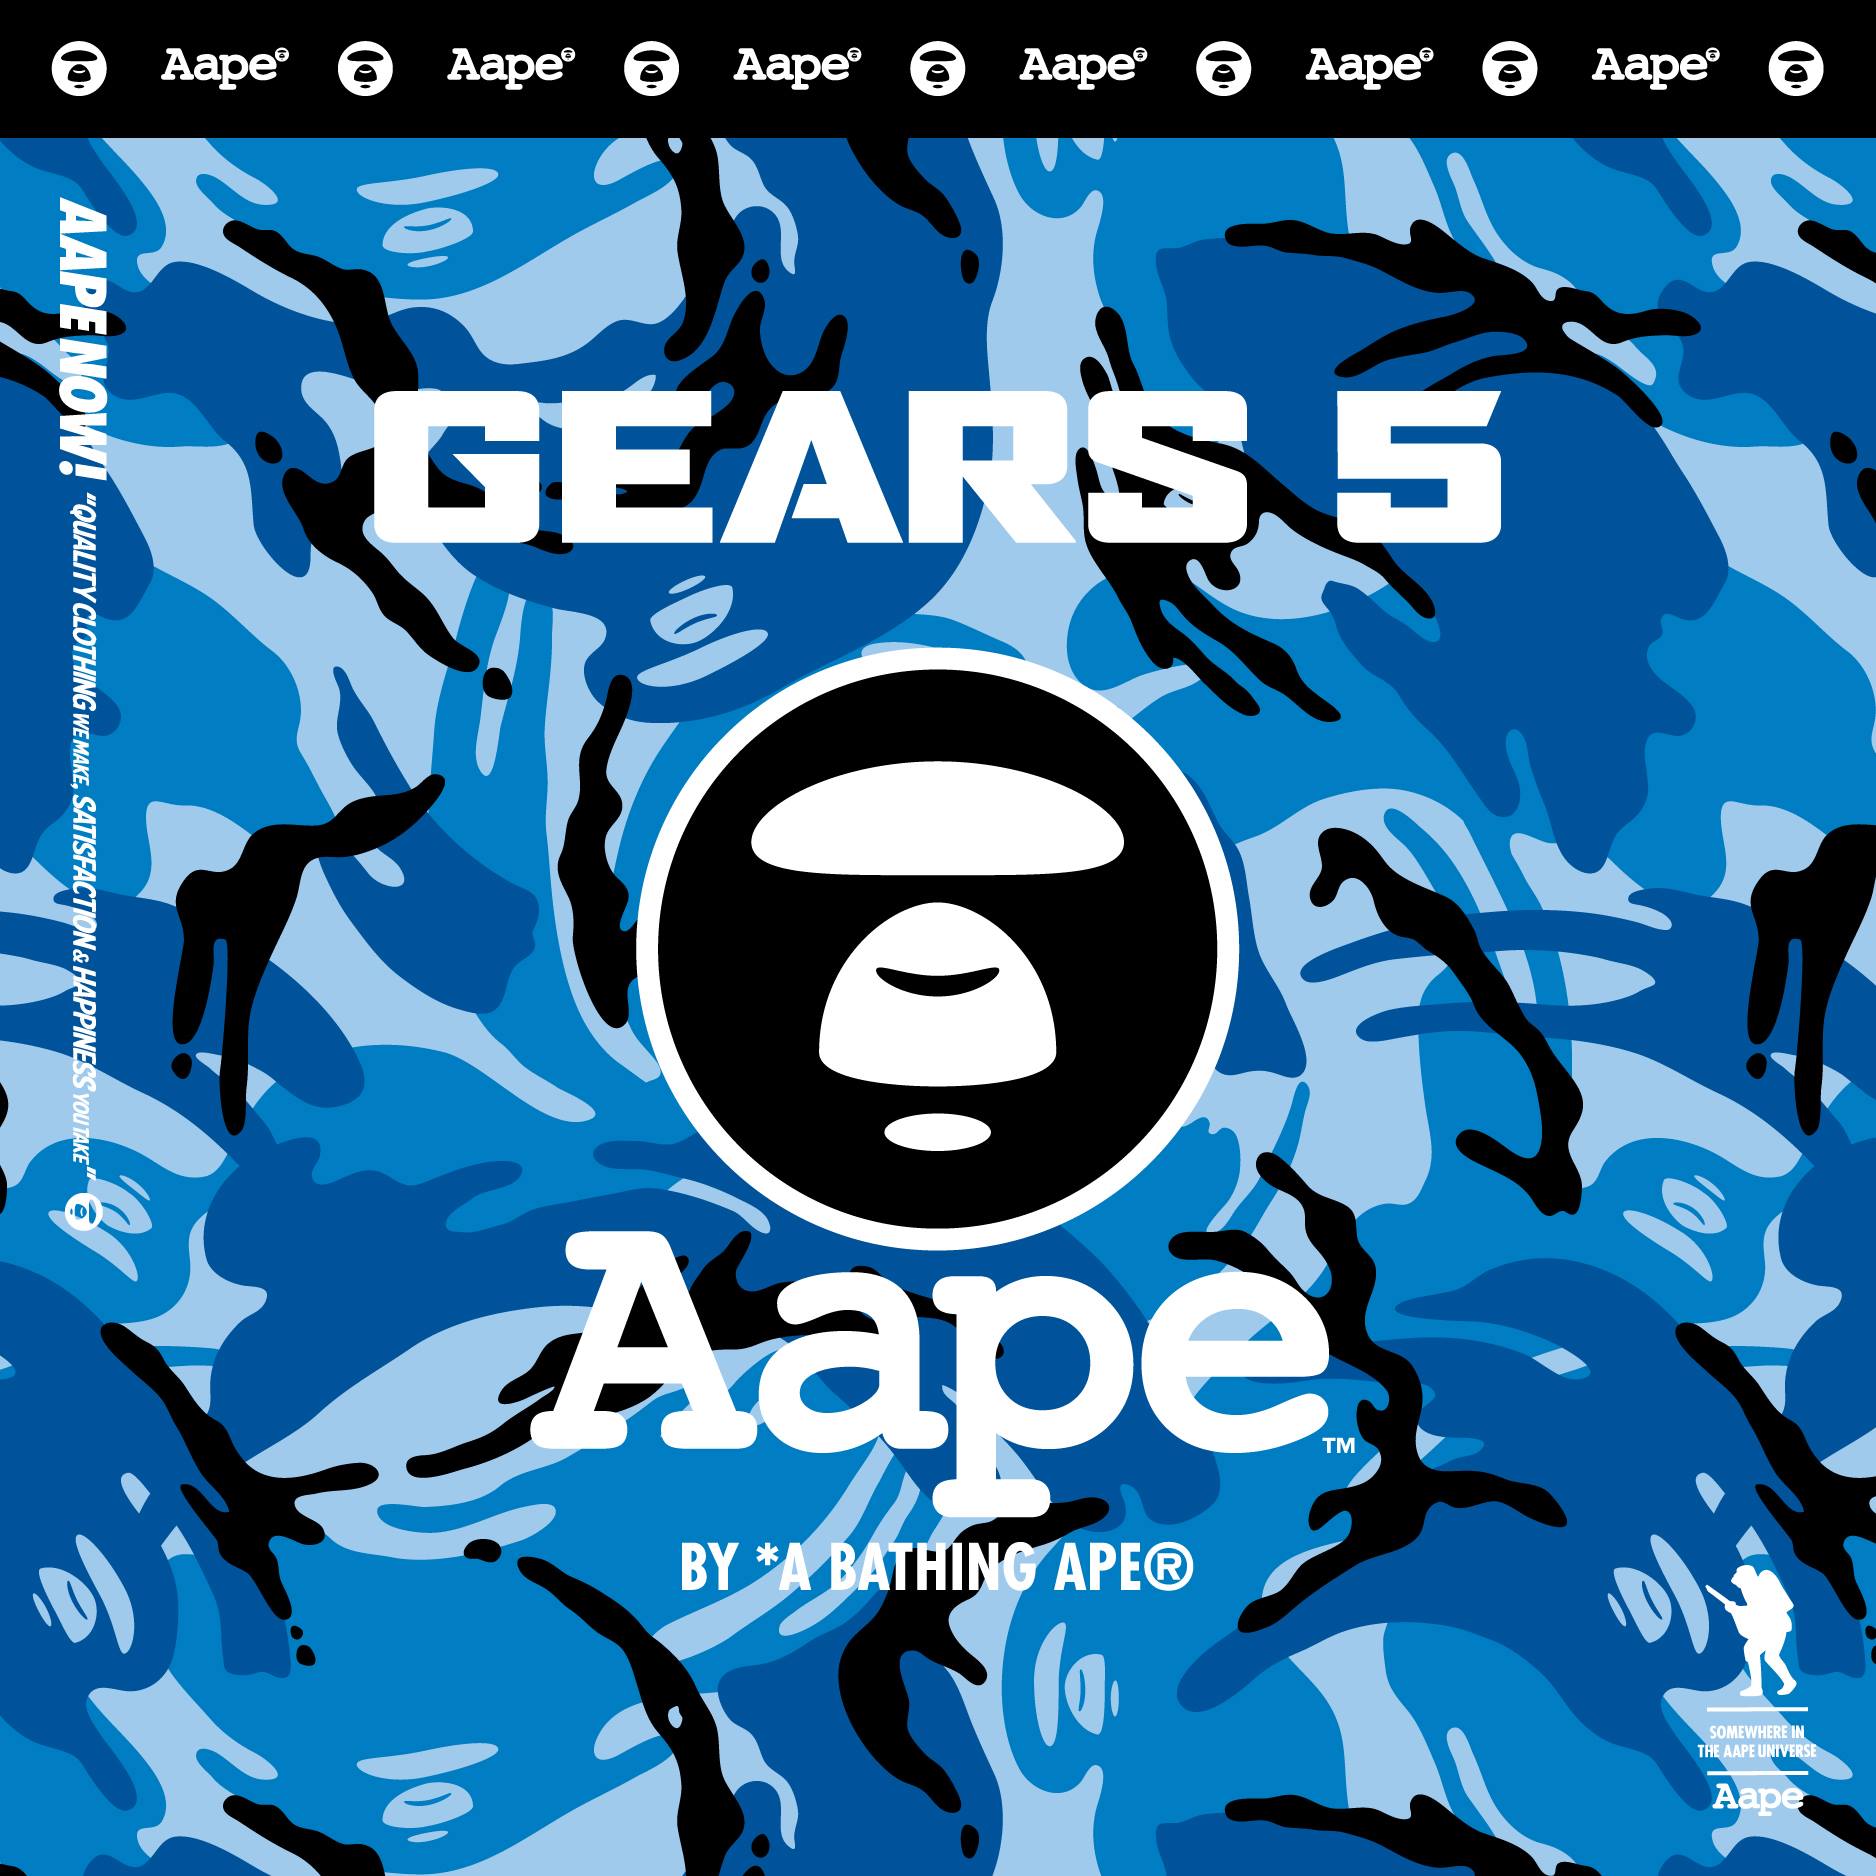 永不孤軍奮戰 – 與 #AAPE 一同探索史上最浩大、最華麗的 Gears 世界  AAPE x Gears of War XBOX E3 2019 發佈會正式登場... #AAPEBYABATHINGAPE